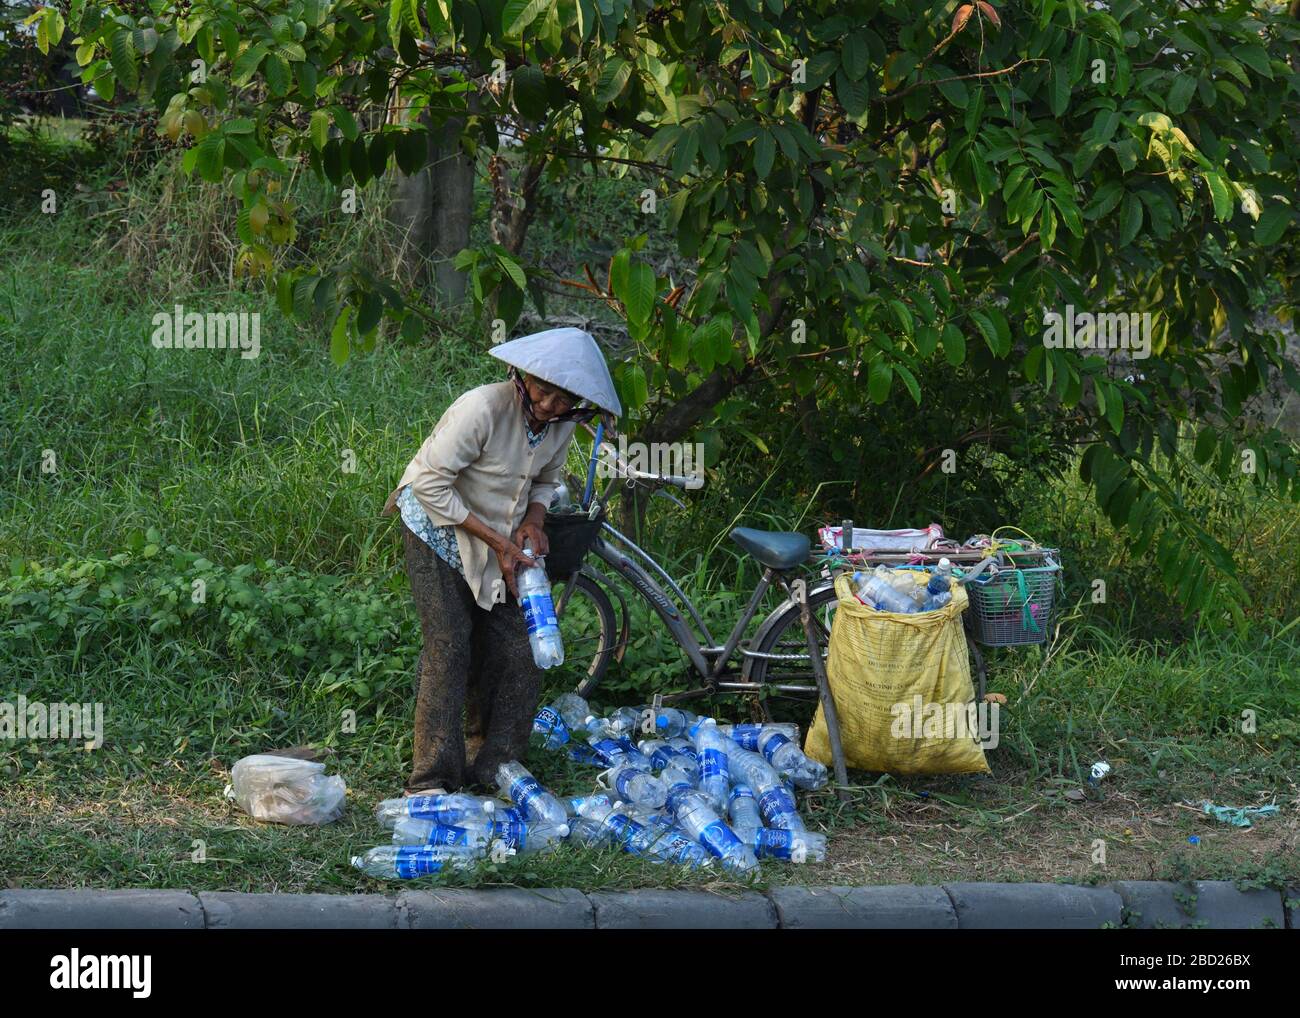 Una signora senior raccoglie bottiglie di plastica vuote per le strade di da Nang, Vietnam, per il riciclaggio per fare qualche spesa. Foto Stock